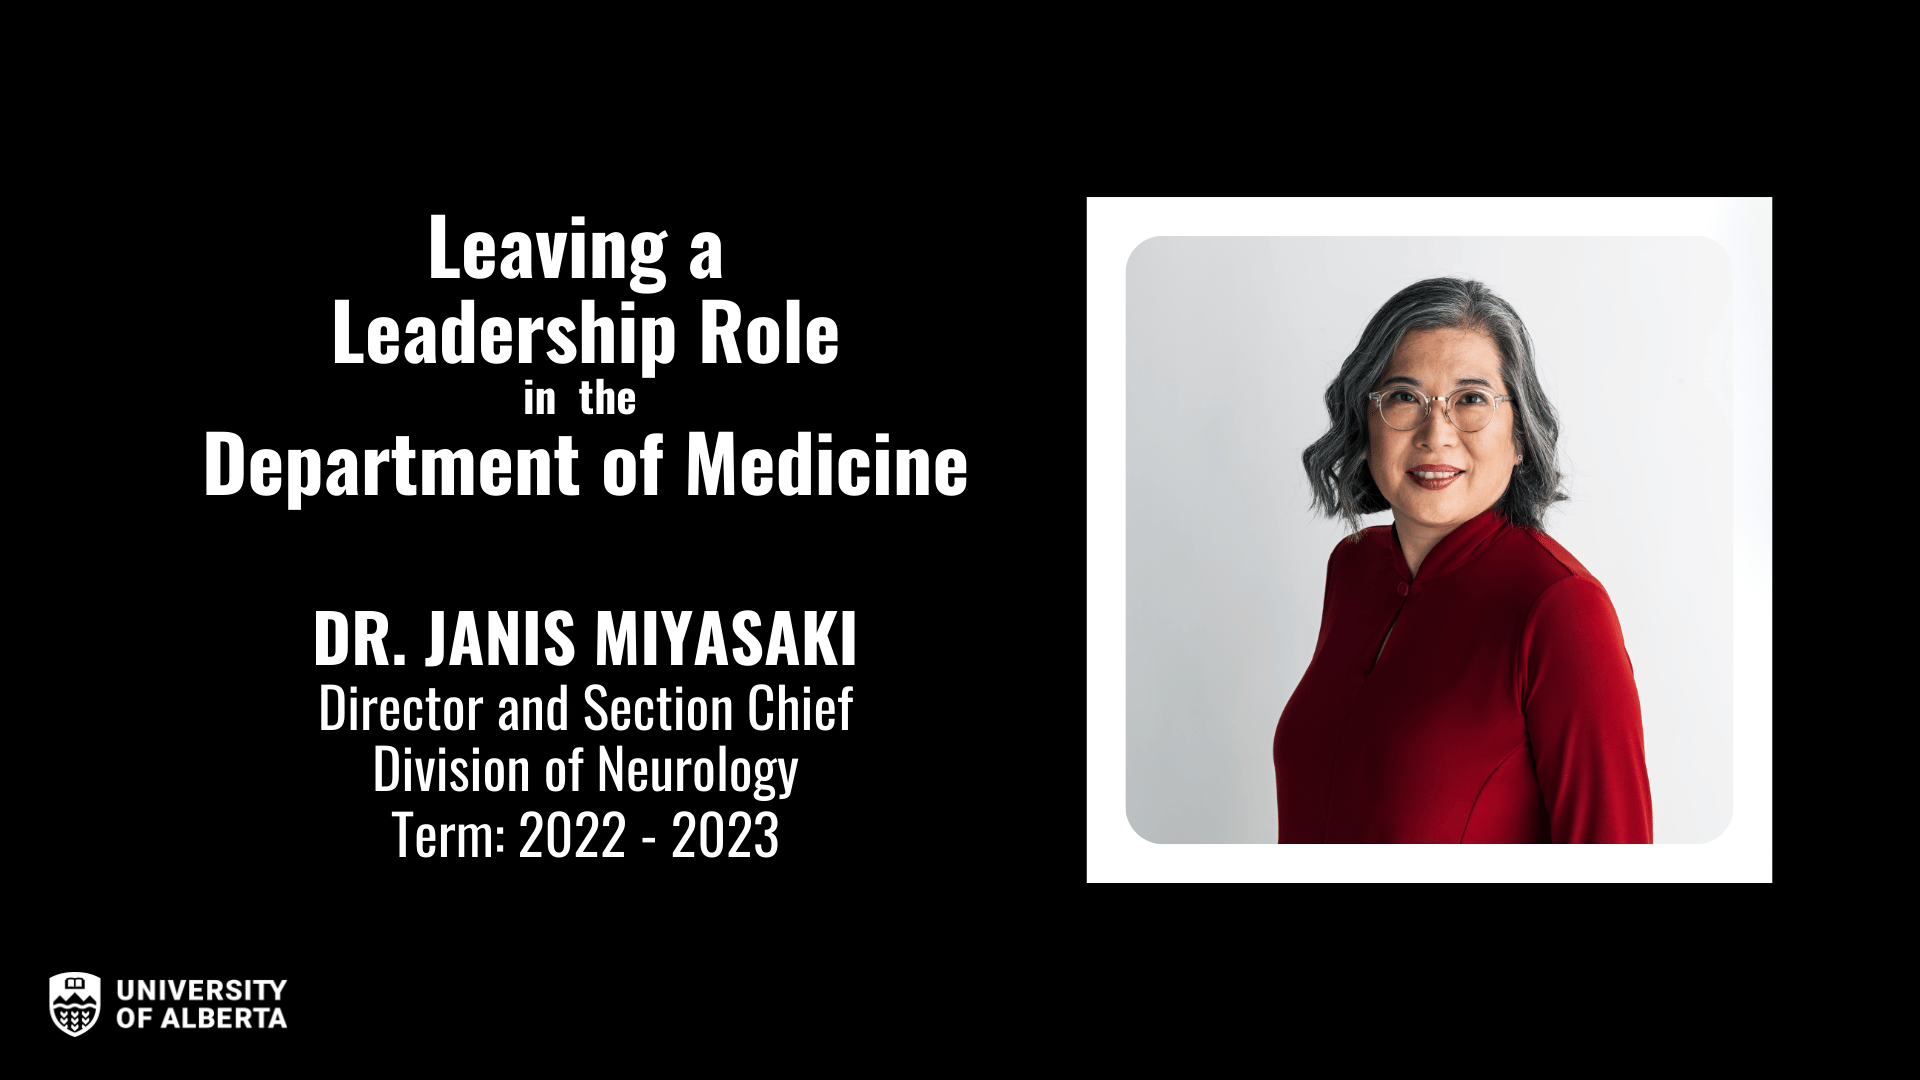 Dr. Janis Miyasaki